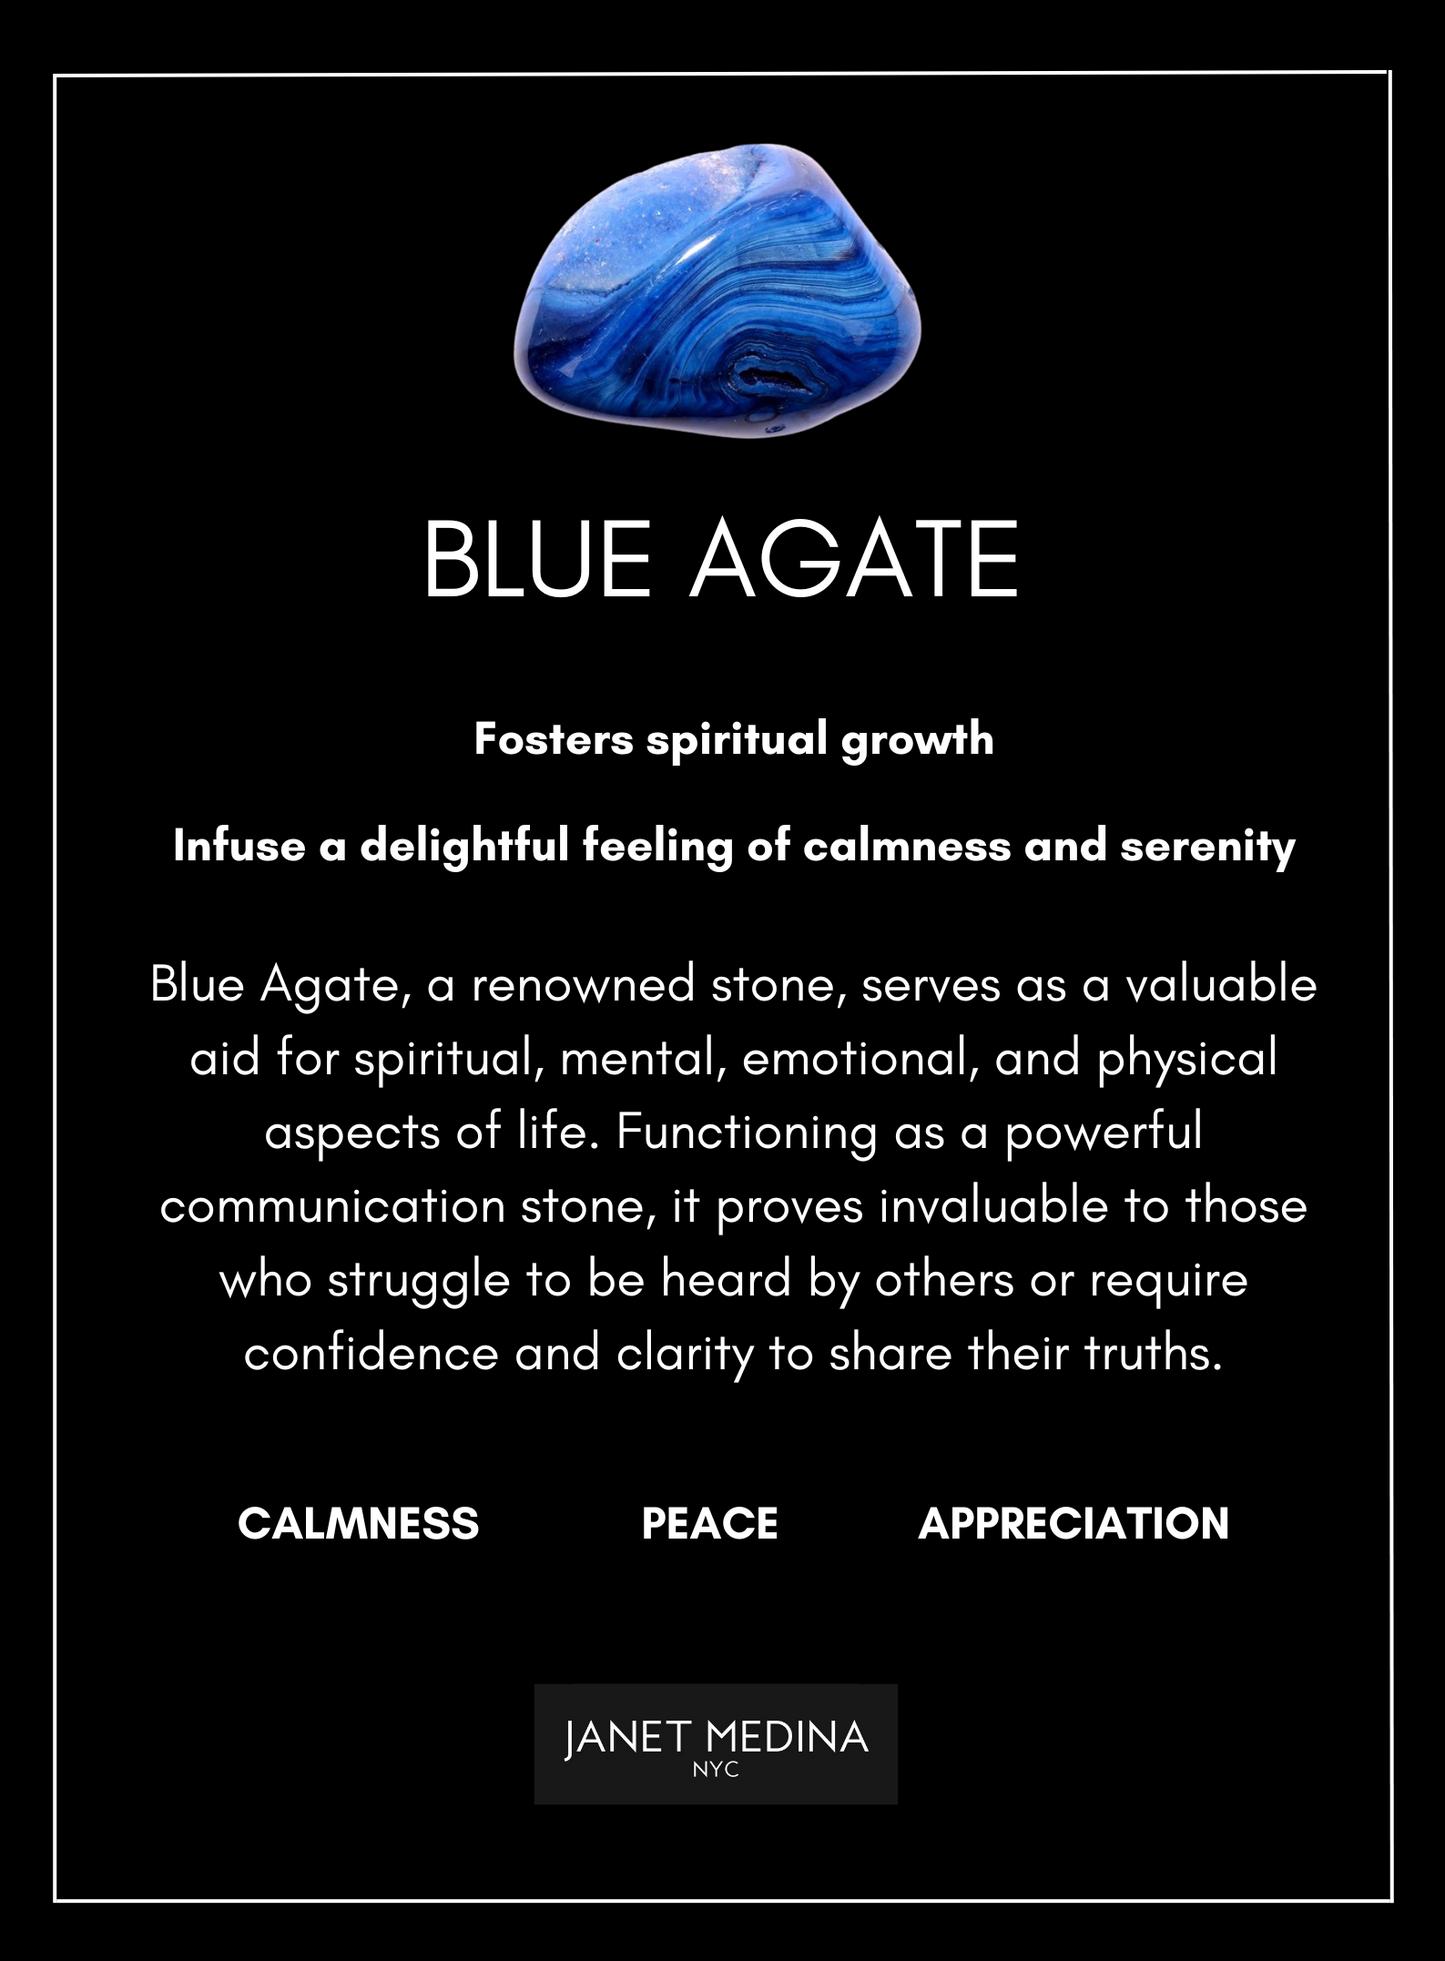 Blue Jade & Agate Set